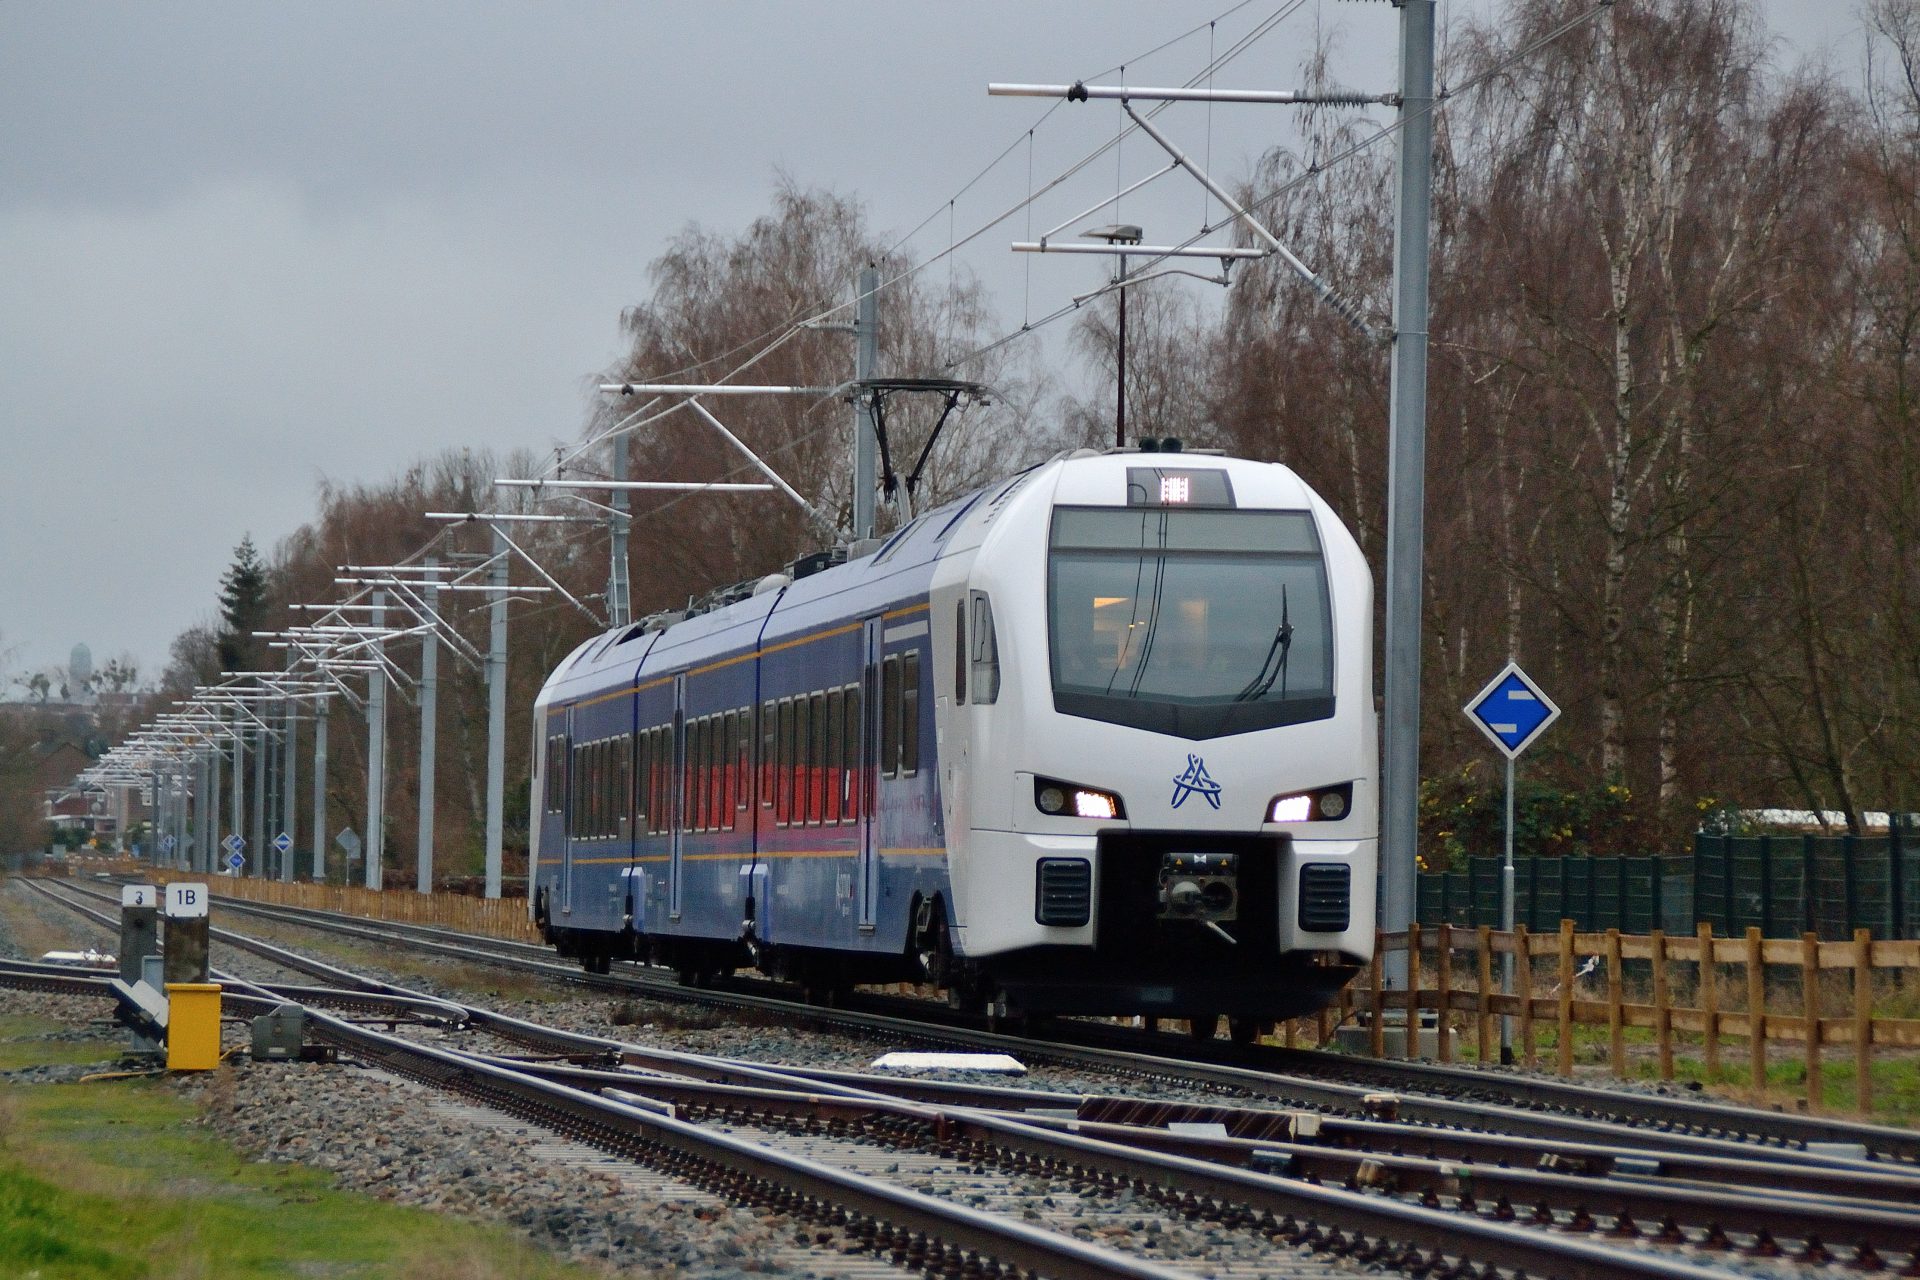 Dankzij een spanningssluis tussen Nederland en Duitsland kunnen treinen automatisch overschakelen op de juiste bovenleidingspanning. 